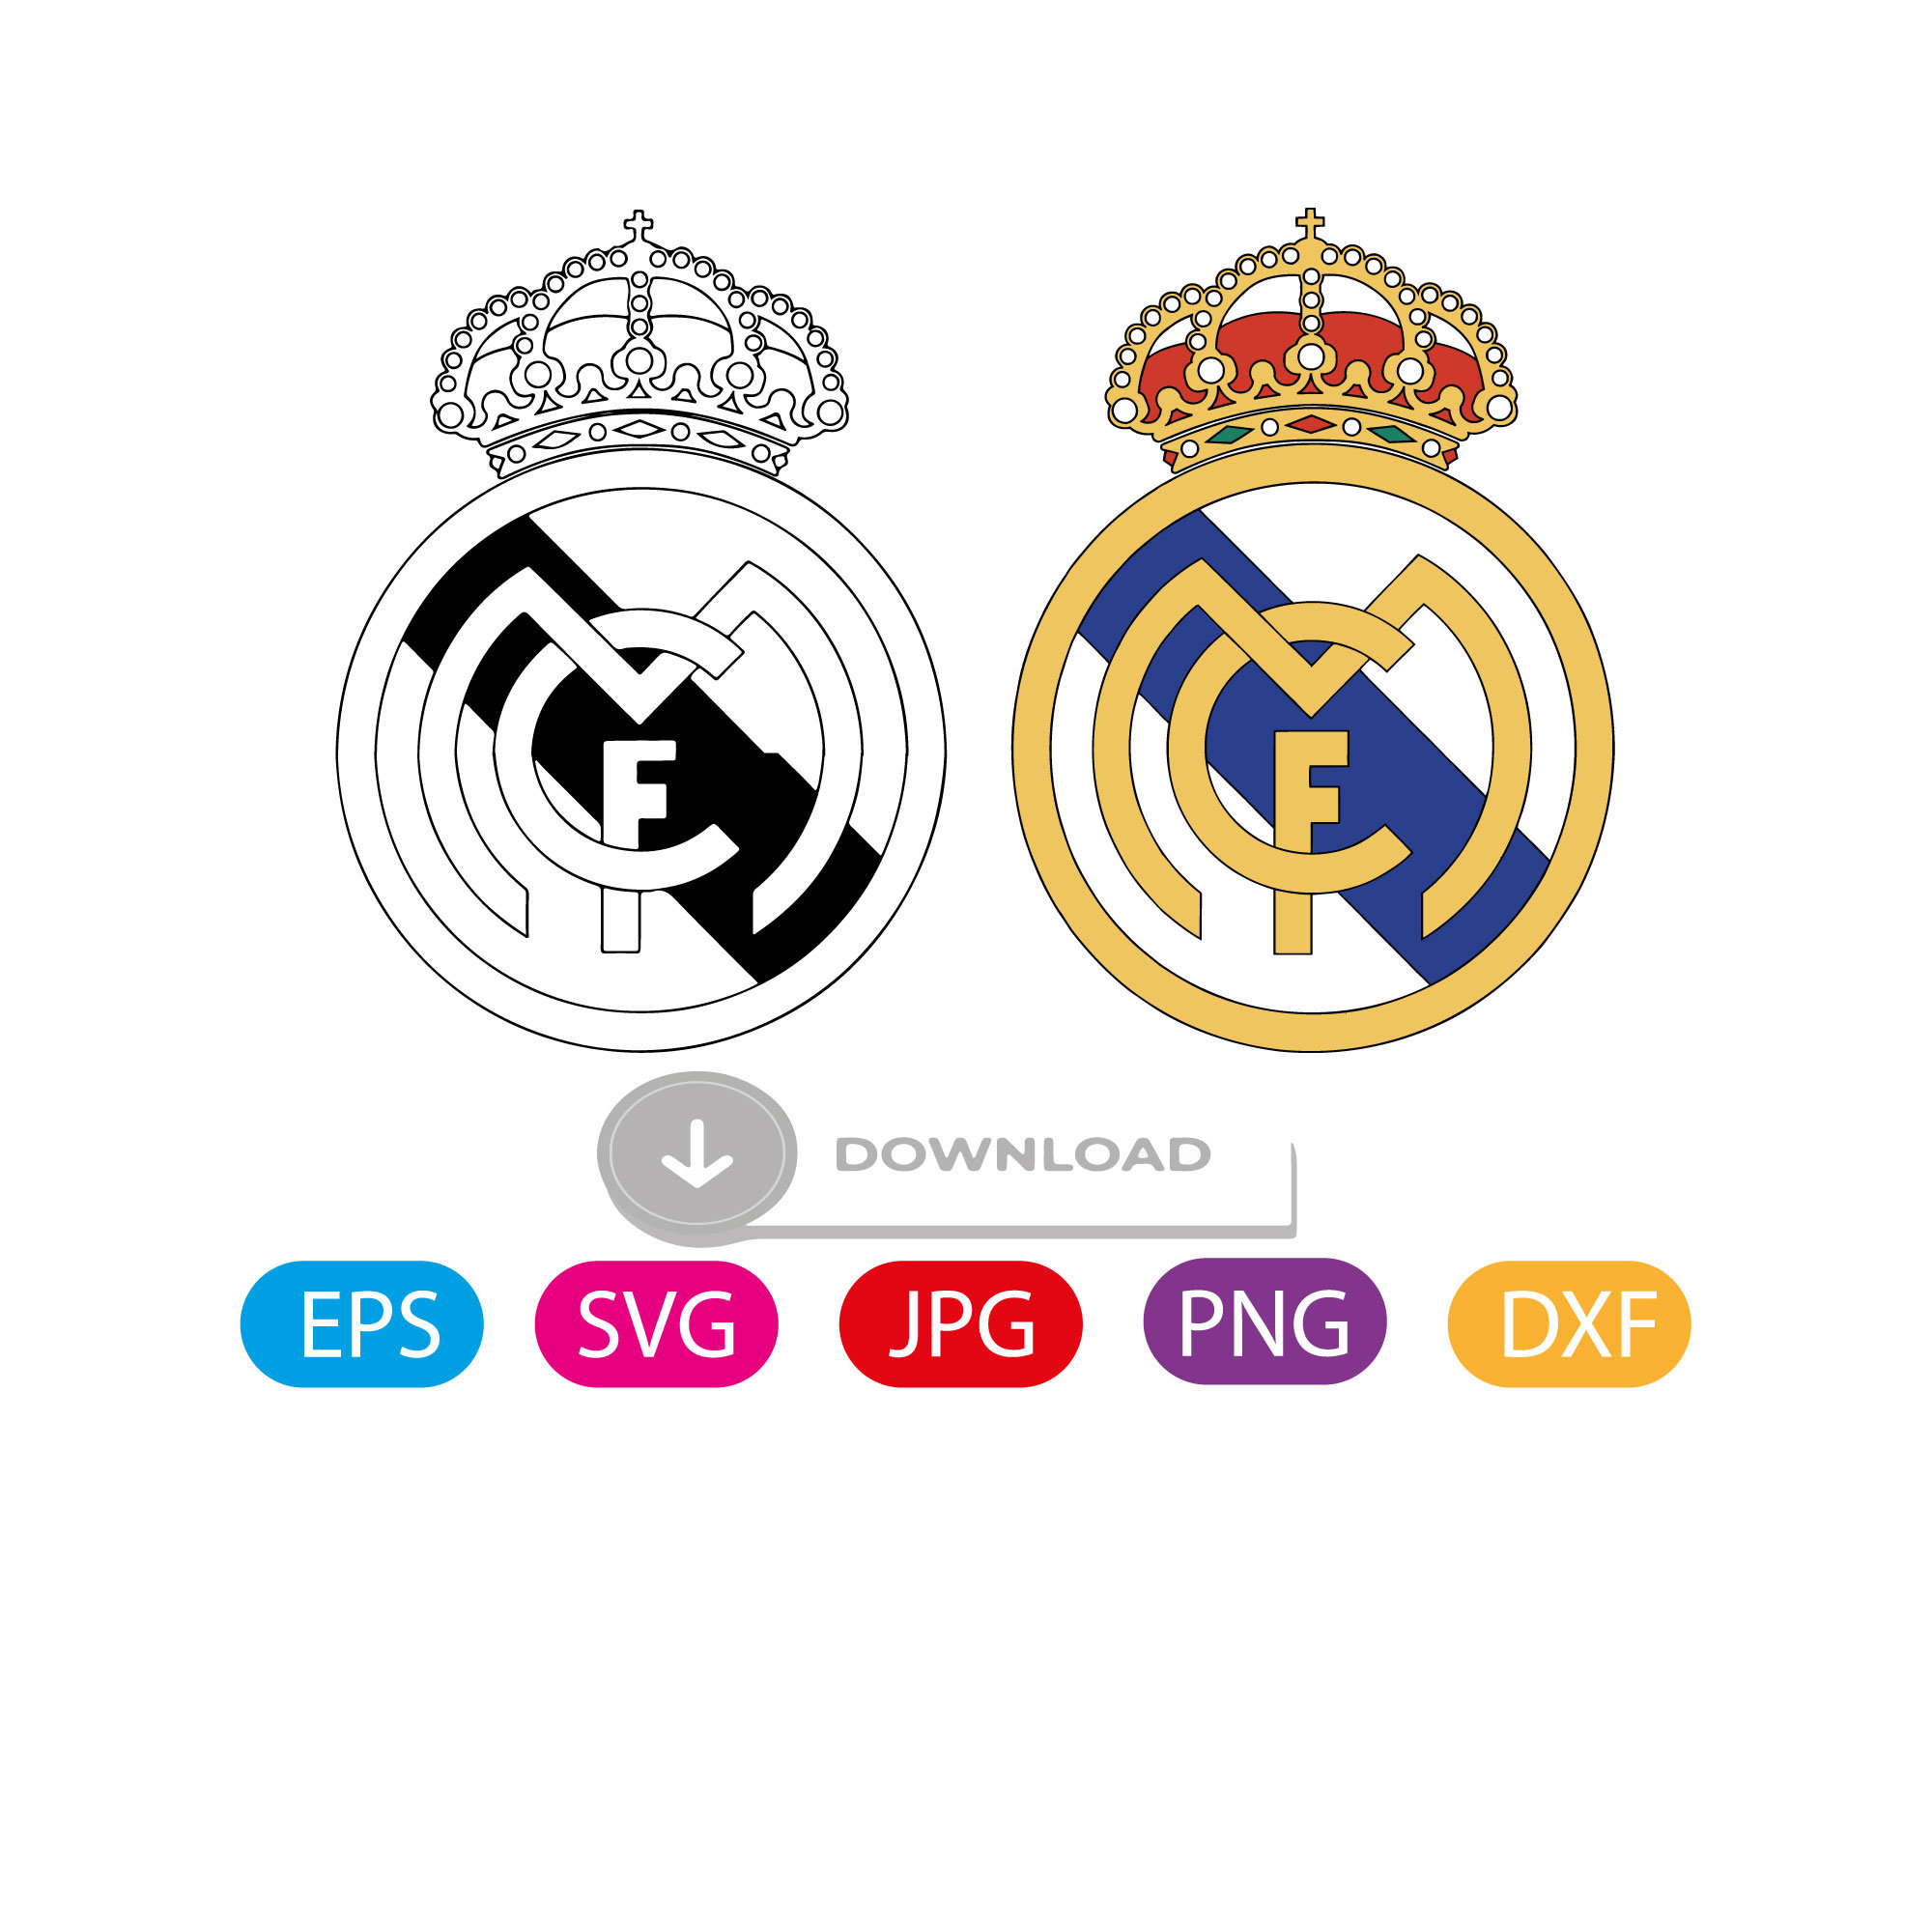 Real Madrid puzzle - original, licensed product - Original f